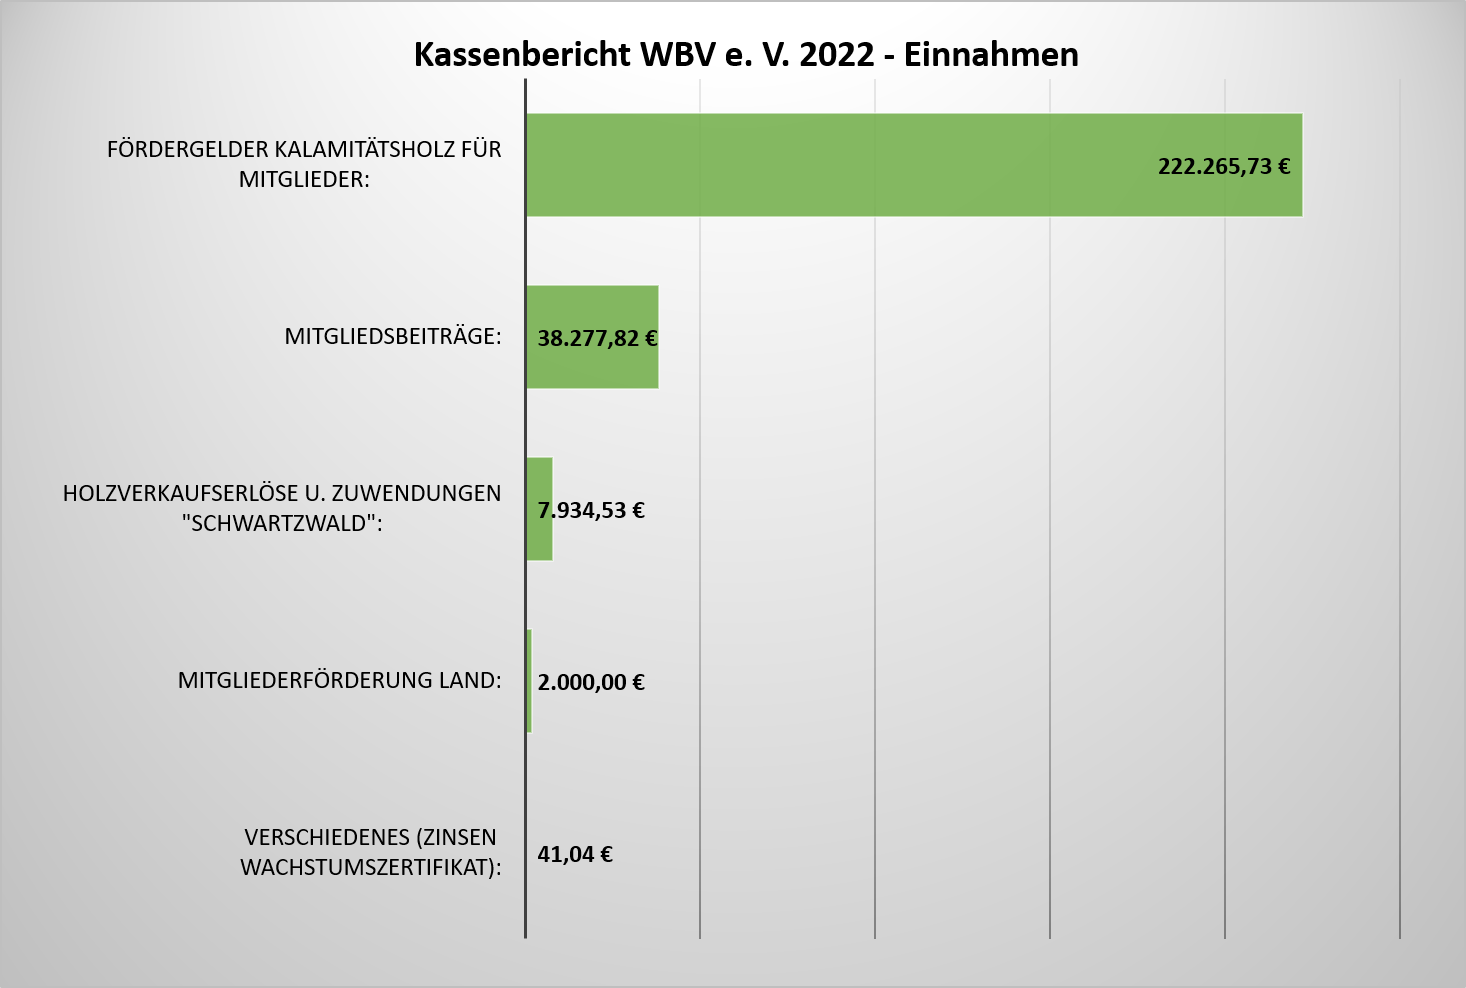 Kassenbericht WBV 2022 Einnahmen